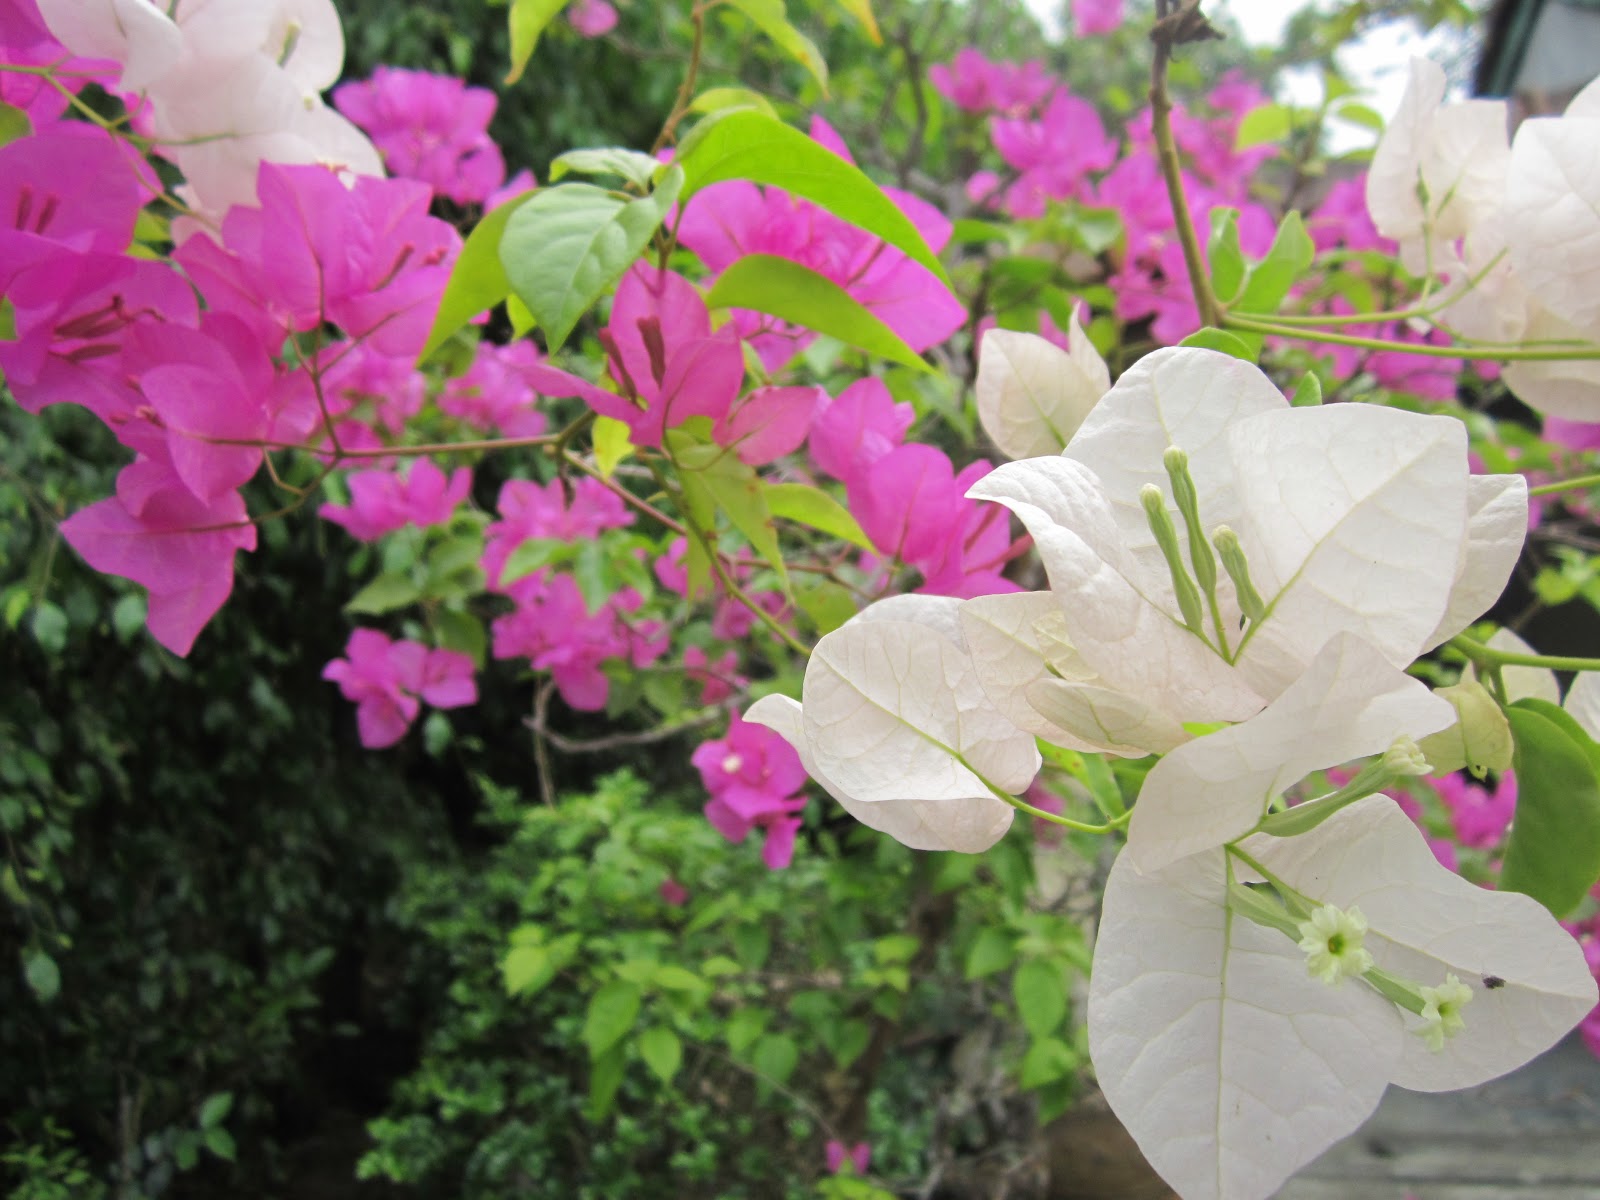 Cây hoa Giấy là loại cây cảnh rất đẹp và phổ biến, được nhiều người yêu thích bởi sắc đỏ, tím, và trắng rực rỡ của hoa. Hãy xem hình ảnh cây hoa Giấy để trầm trồ ngắm nhìn vẻ đẹp tuyệt vời này.